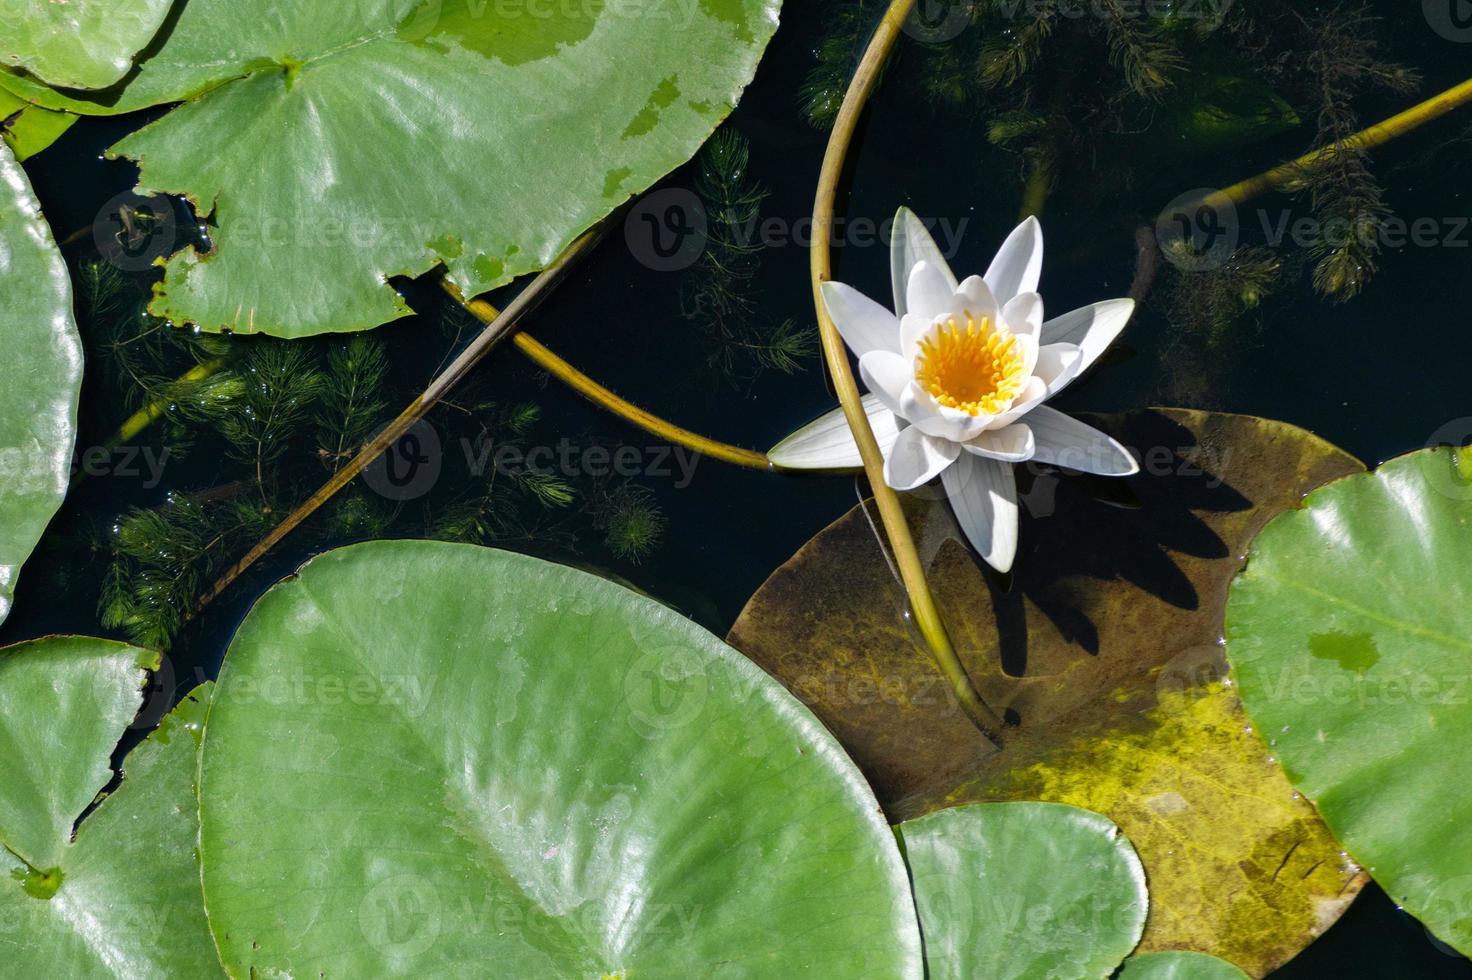 flor de lirio de agua en el río, símbolo nacional de bangladesh, hermoso loto blanco con polen amarillo. foto